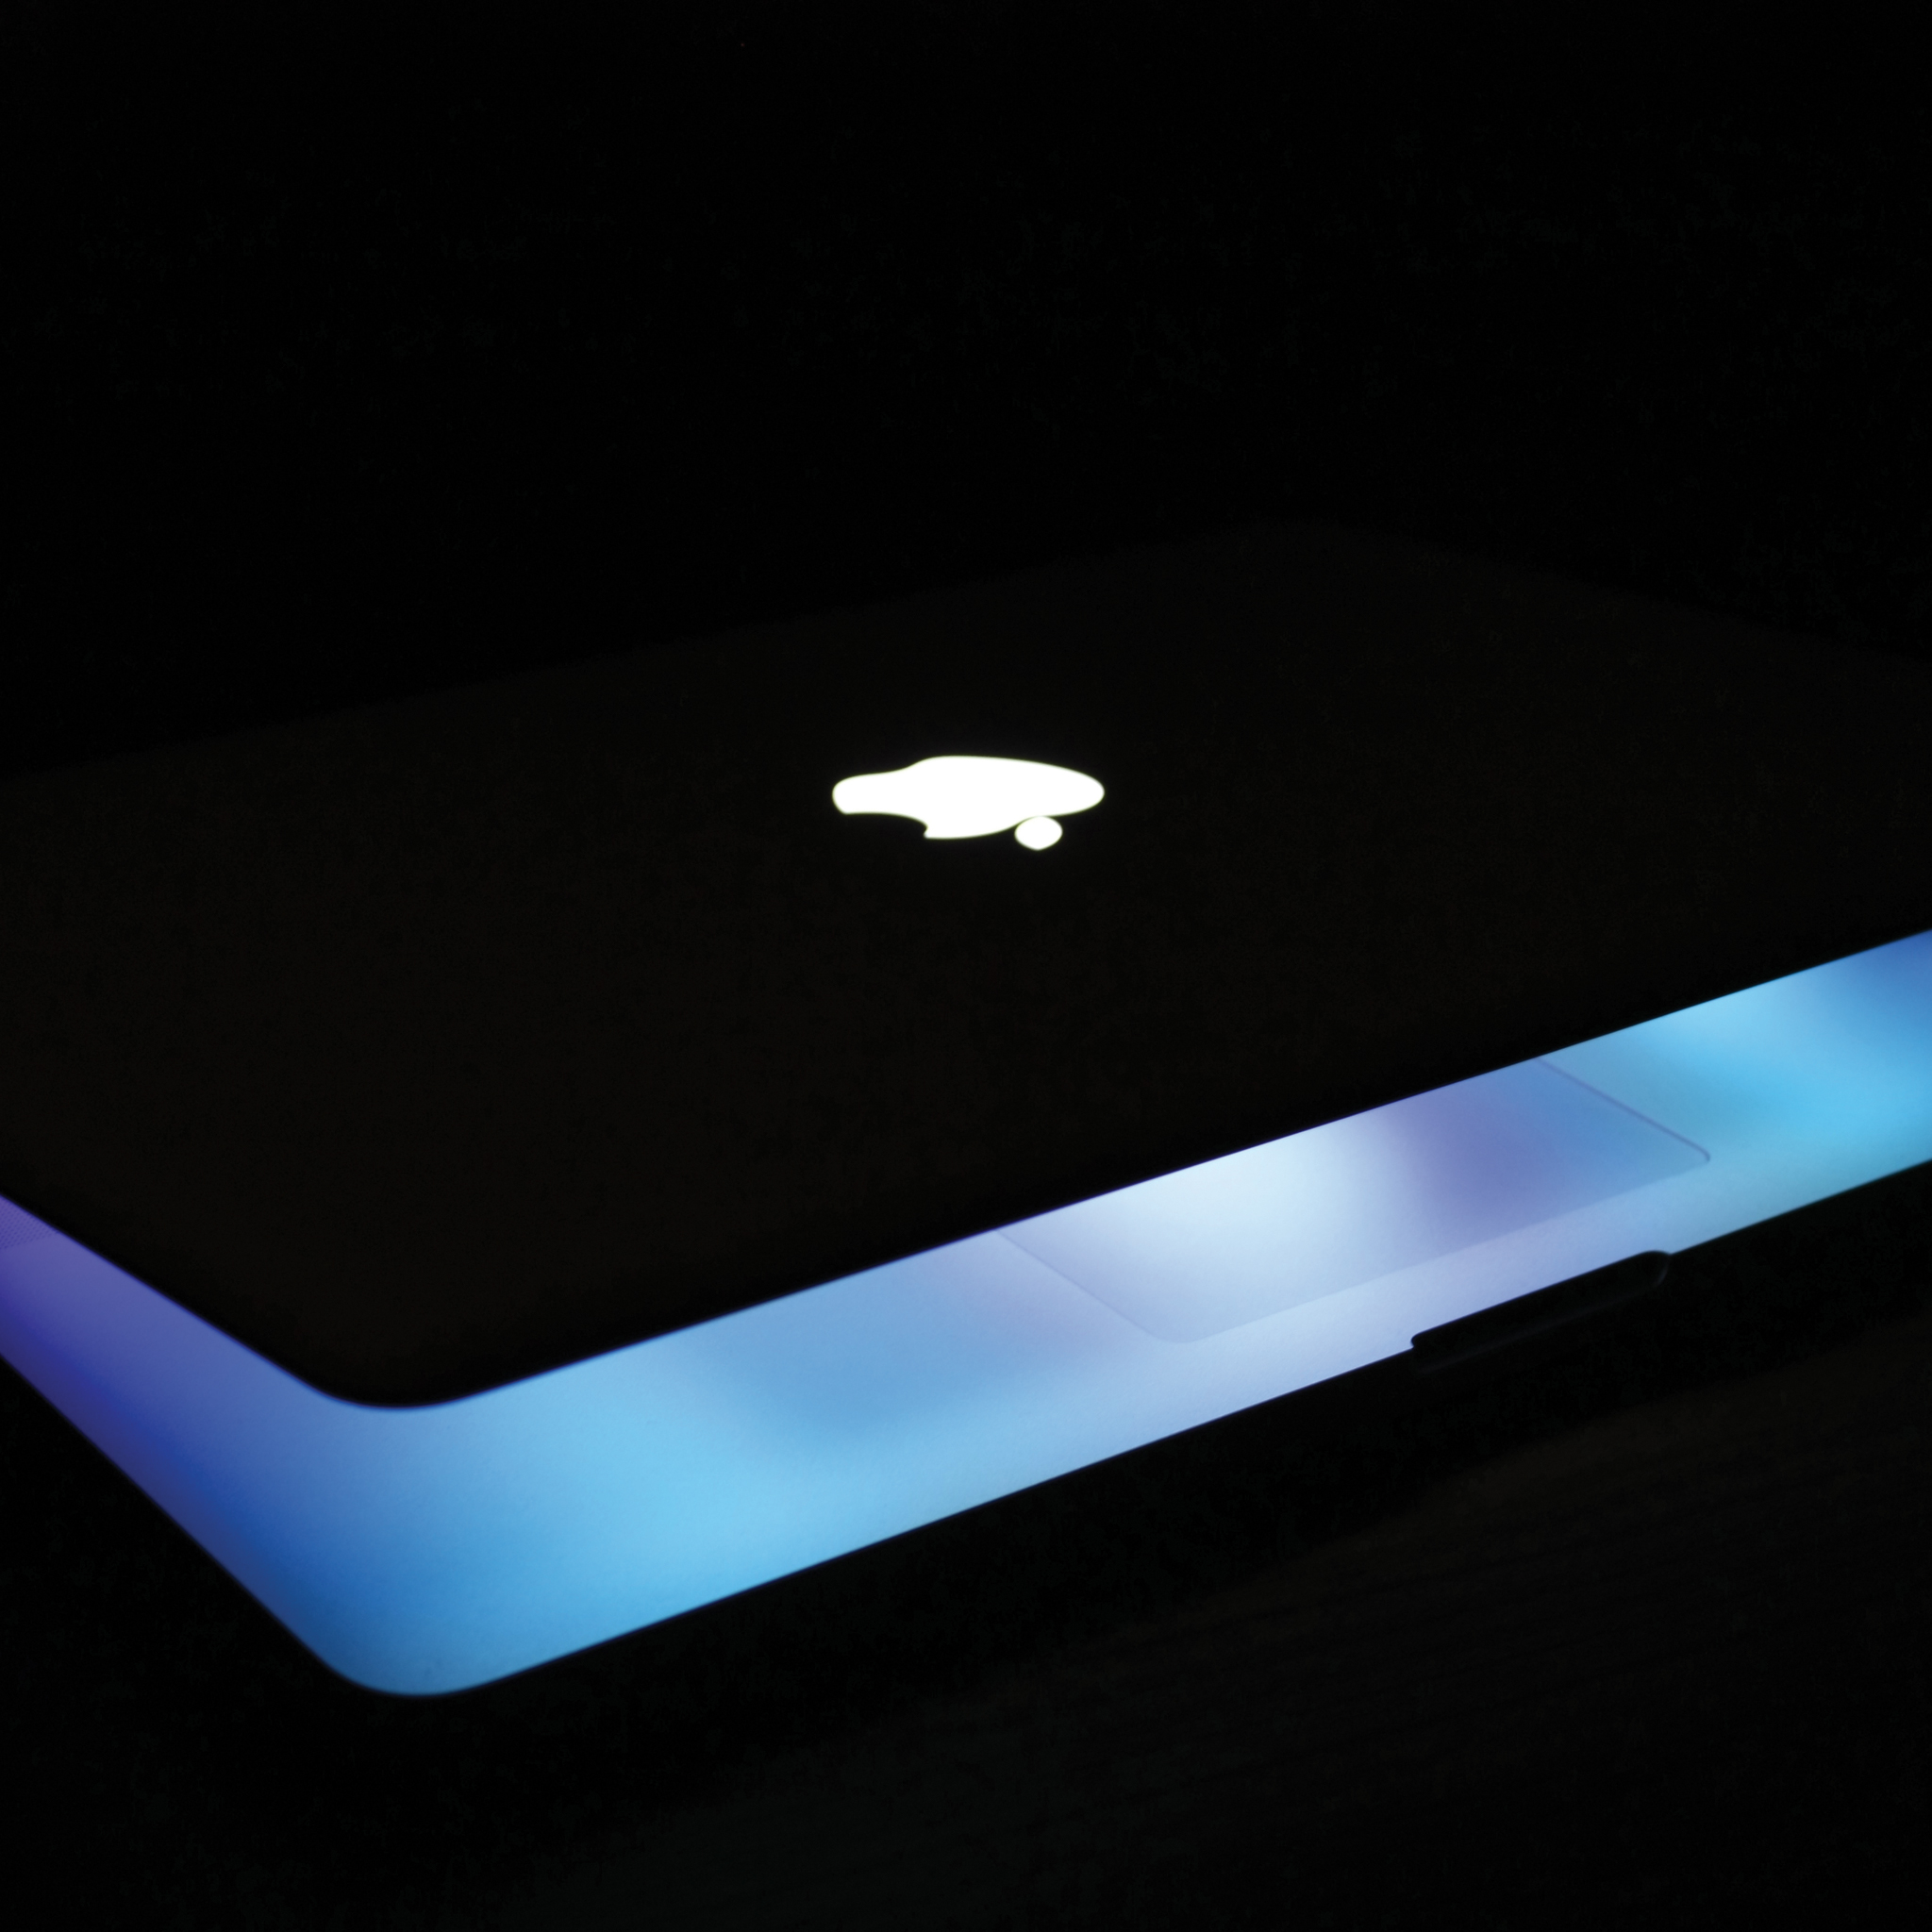 macbook pro wallpaper,blau,licht,beleuchtung,gadget,technologie